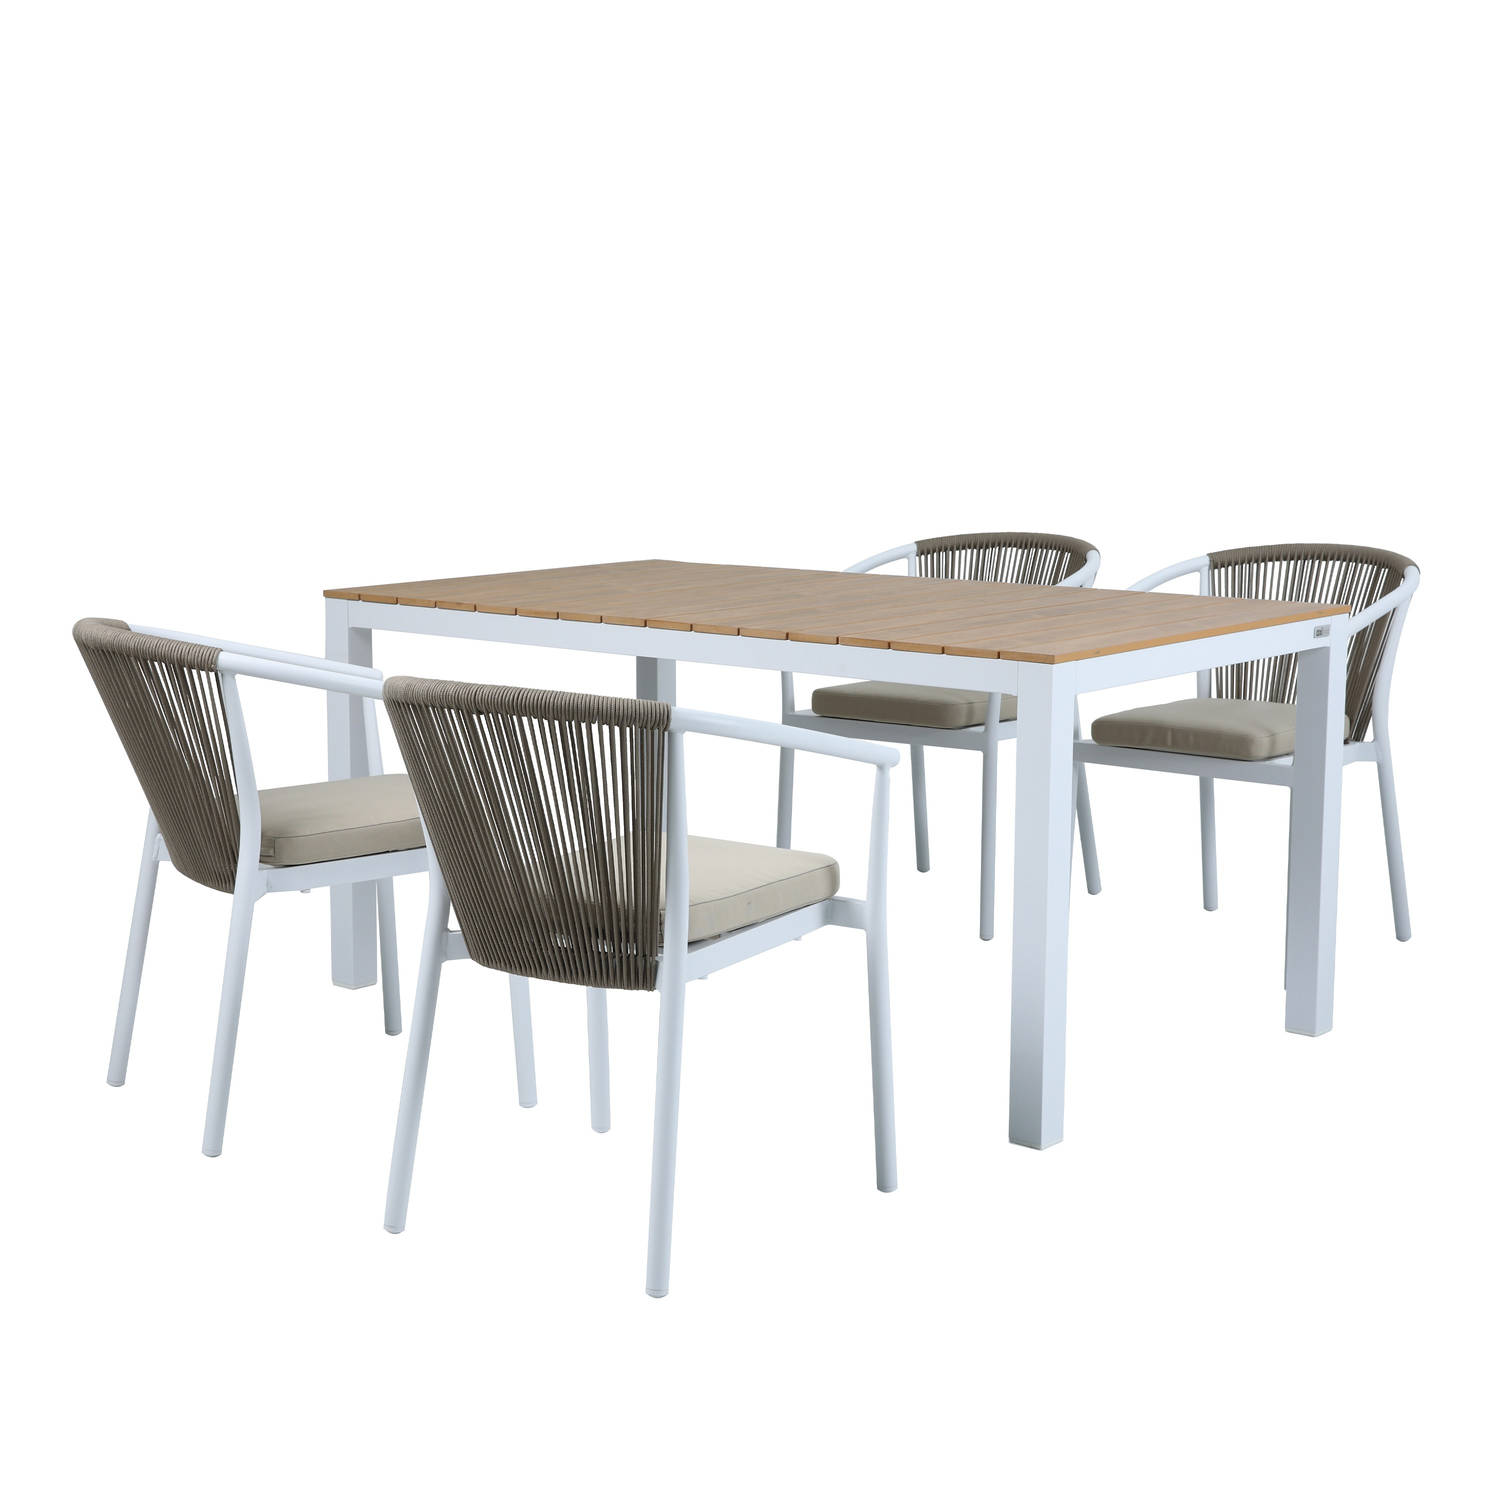 AXI Suvi Tuinset met 4 stoelen Wit met Teak-look Polywood – Gepoedercoat aluminium frame – Stoel met kaki kussen en rugleuning van Olefin touwen - Polywood tafelblad